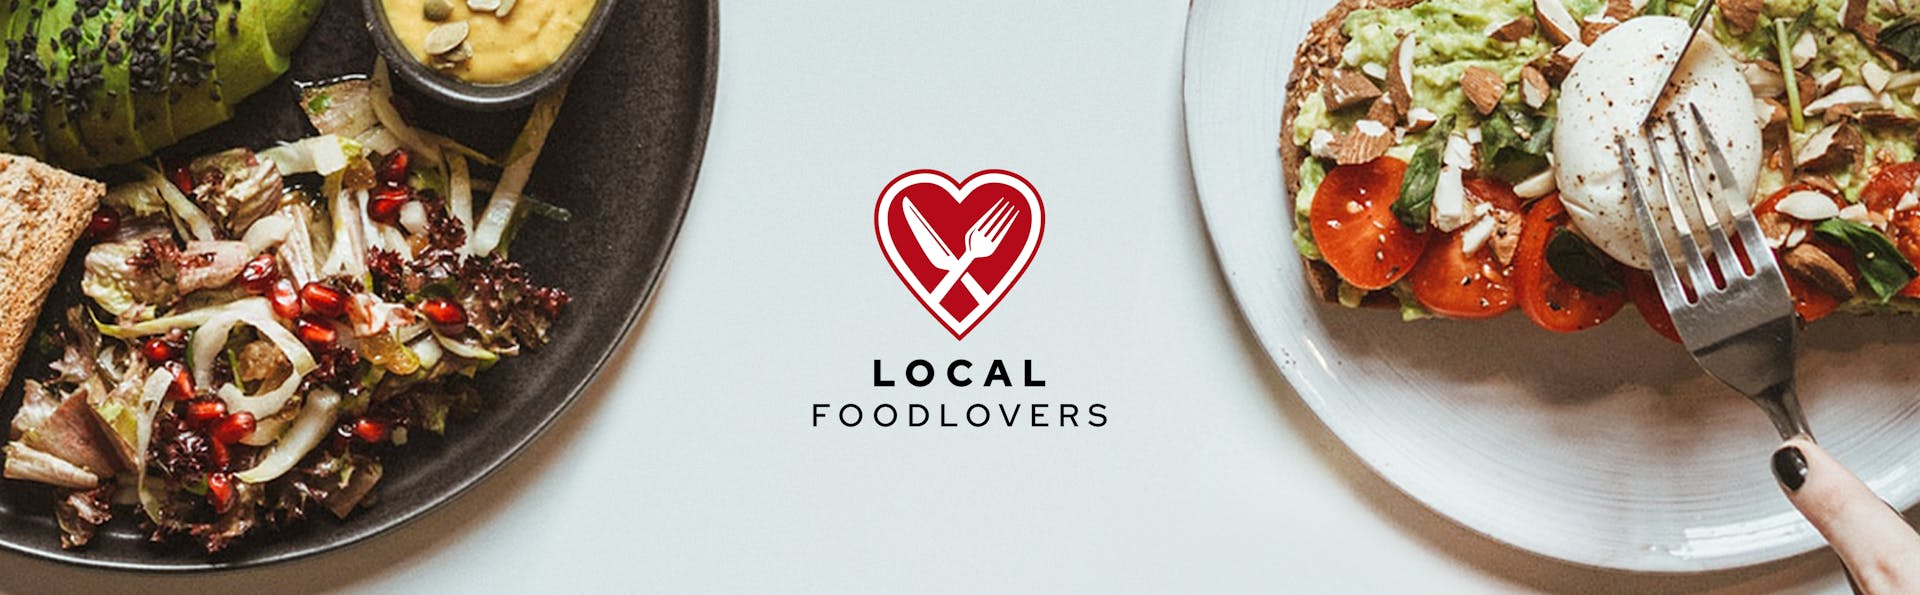 Local Foodlovers Website